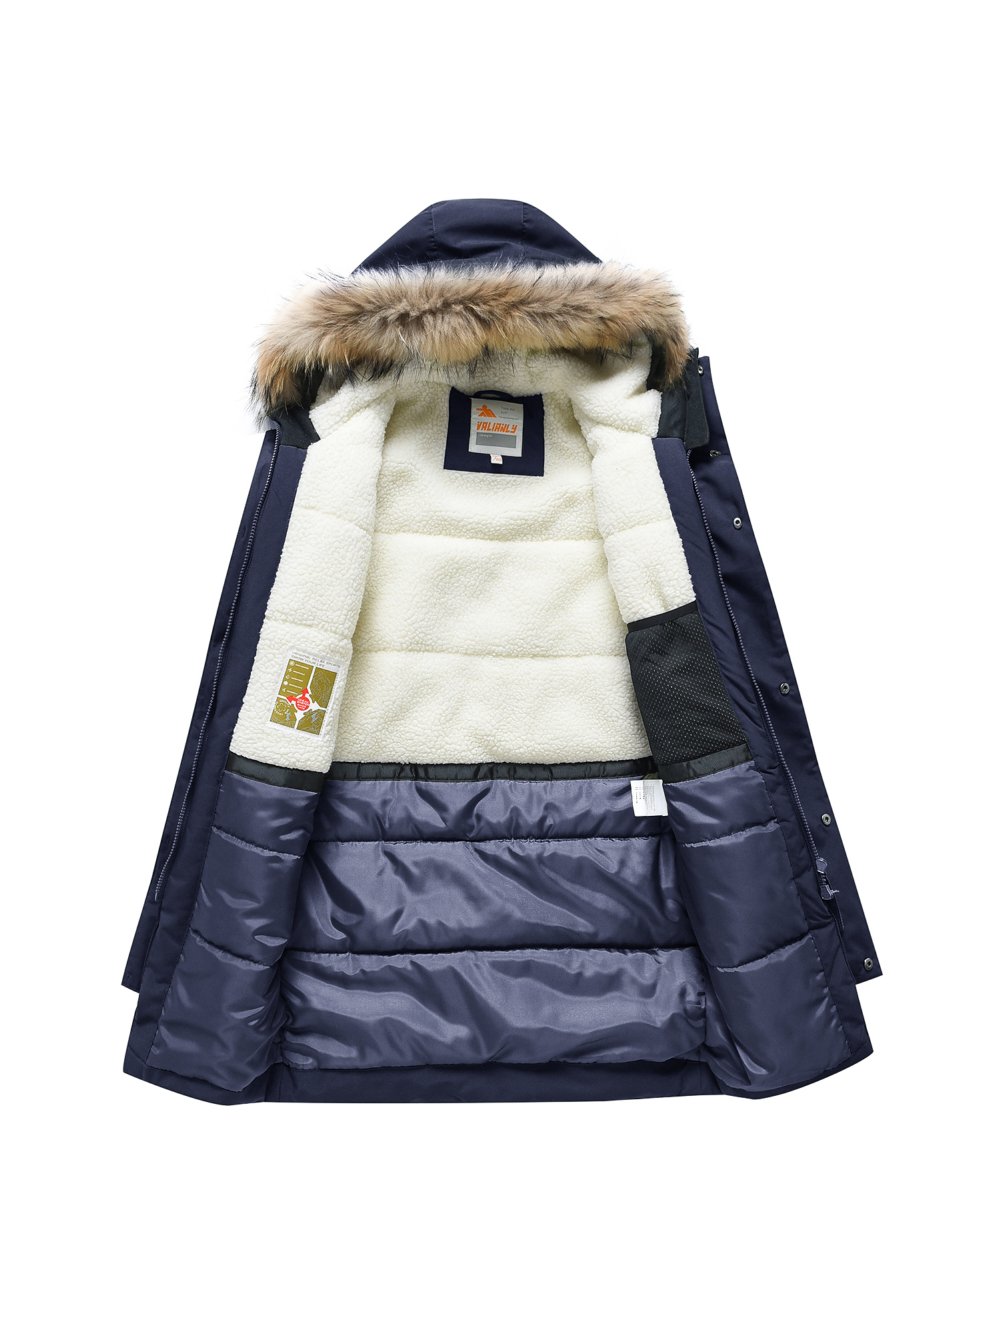 Купить куртку парку для мальчика оптом от производителя недорого в Москве 9343TS 1